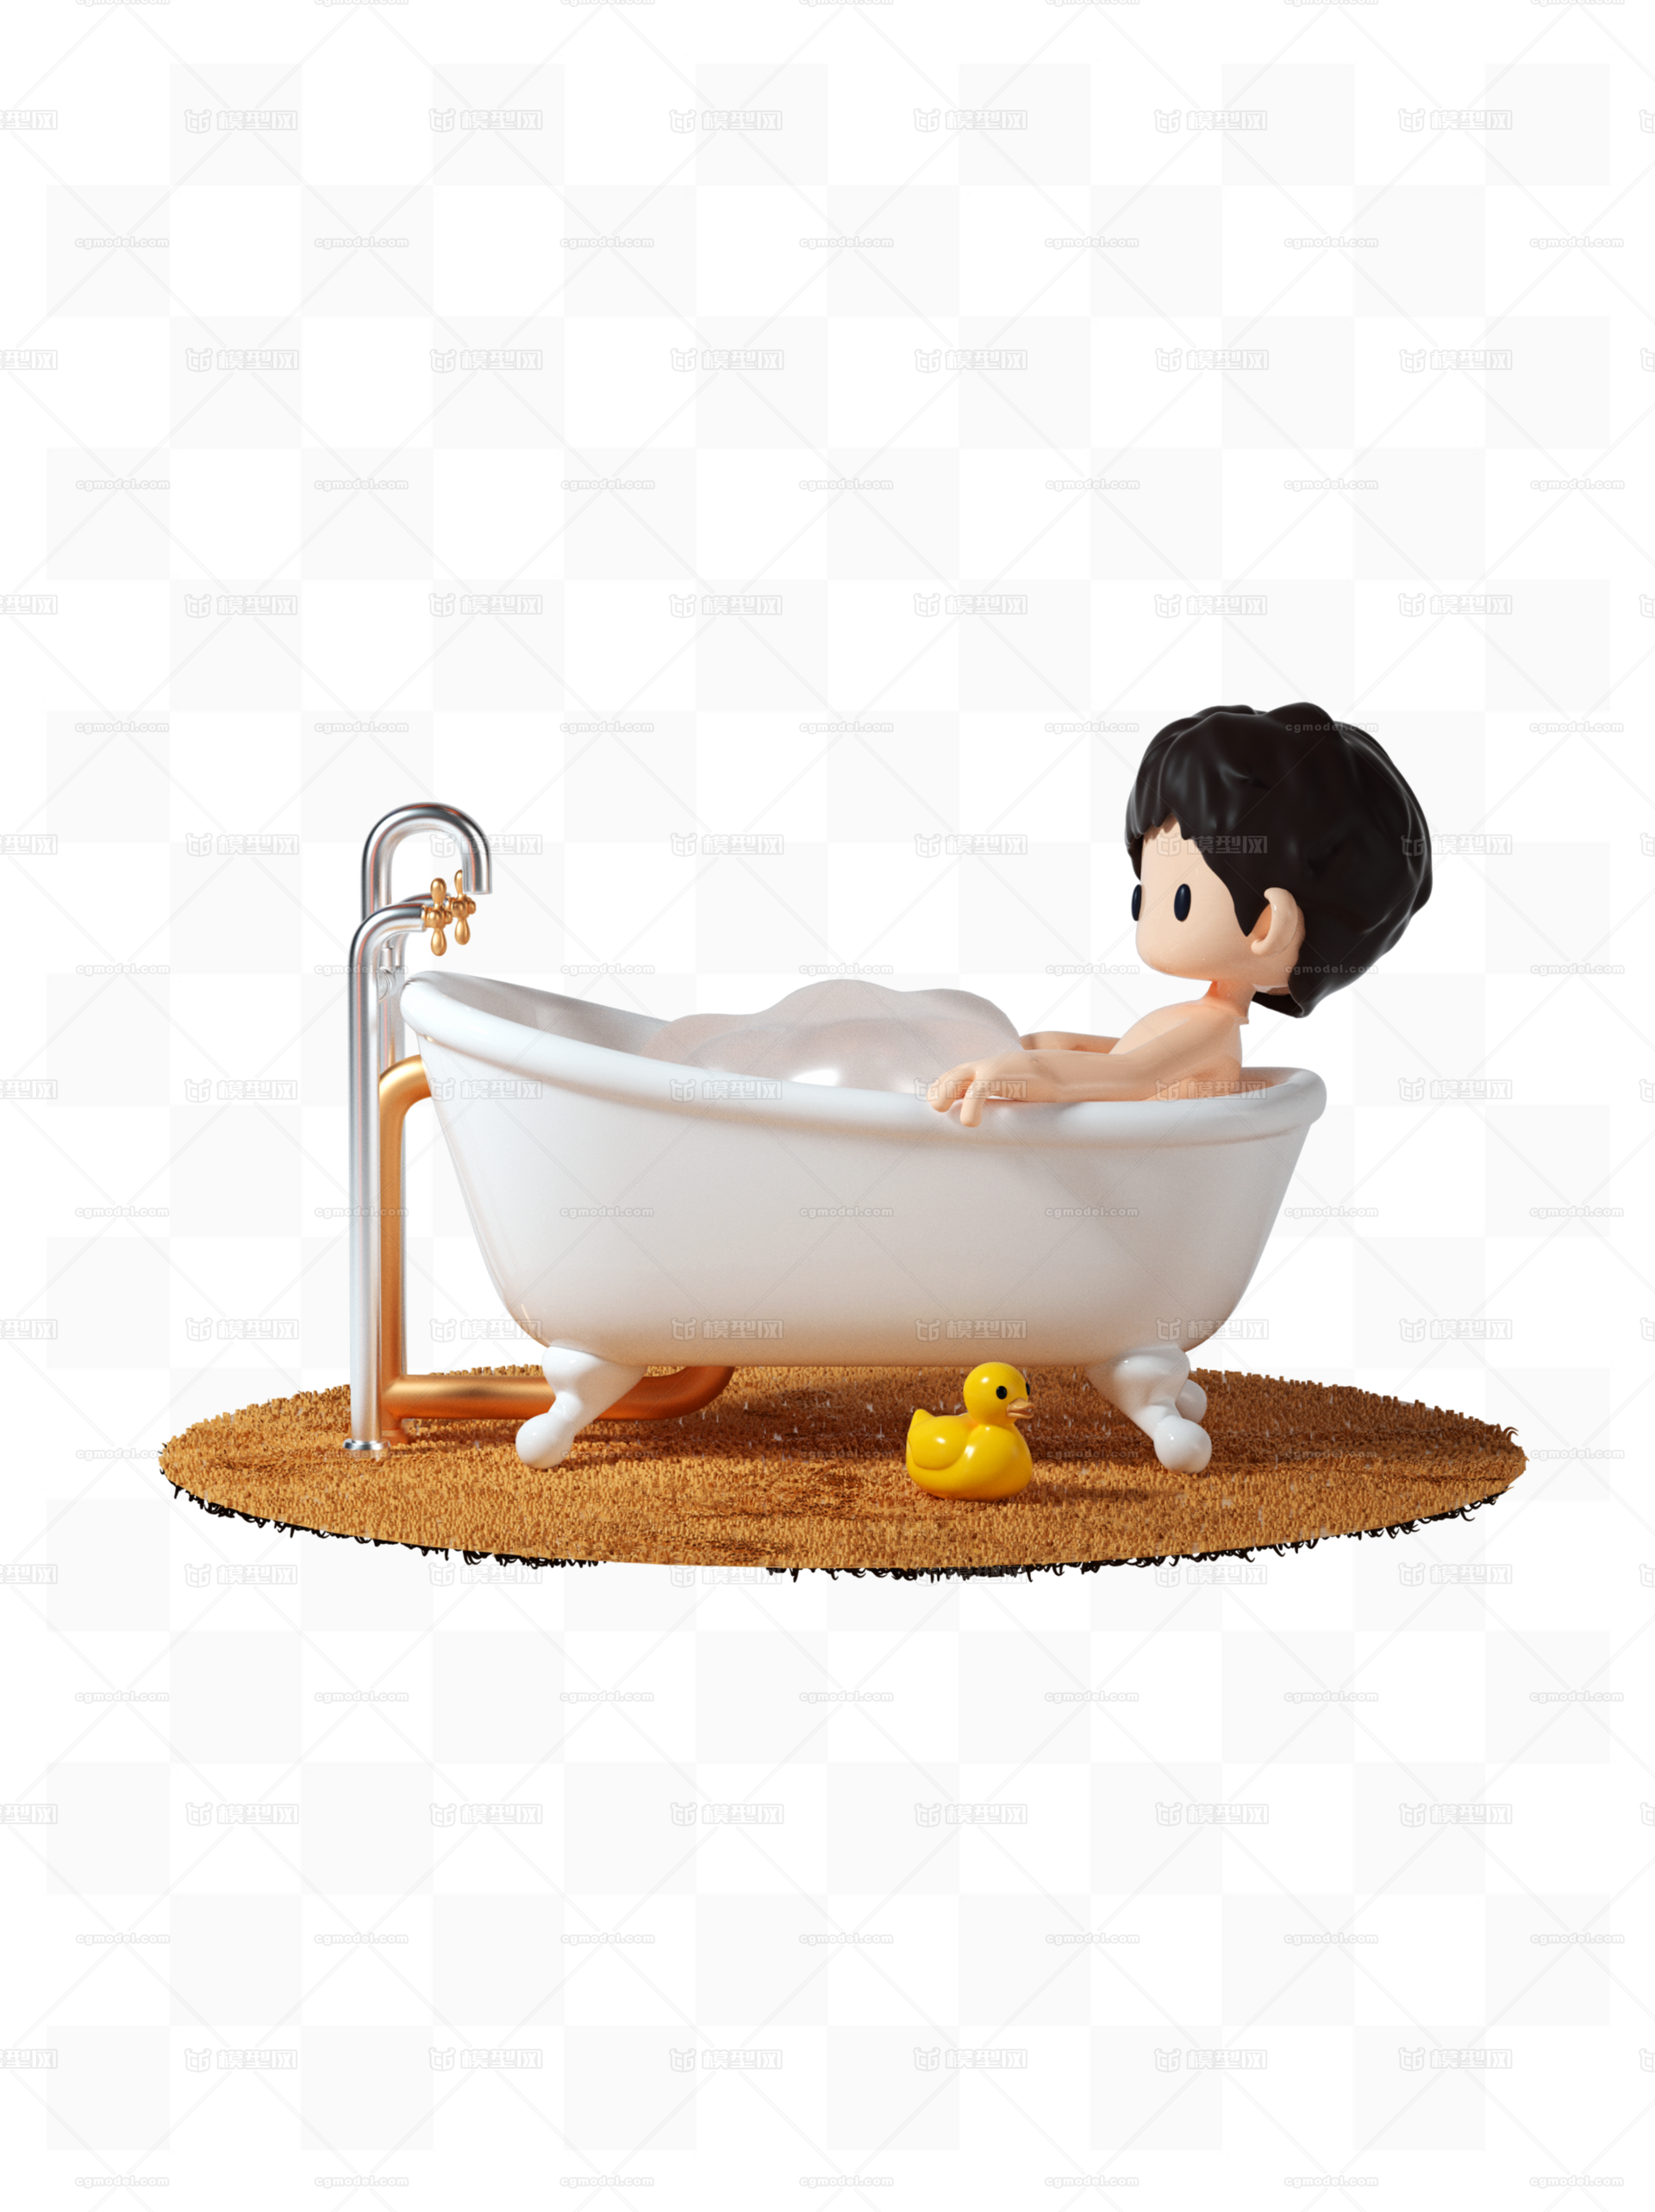 小男孩洗澡照片-图库-五毛网